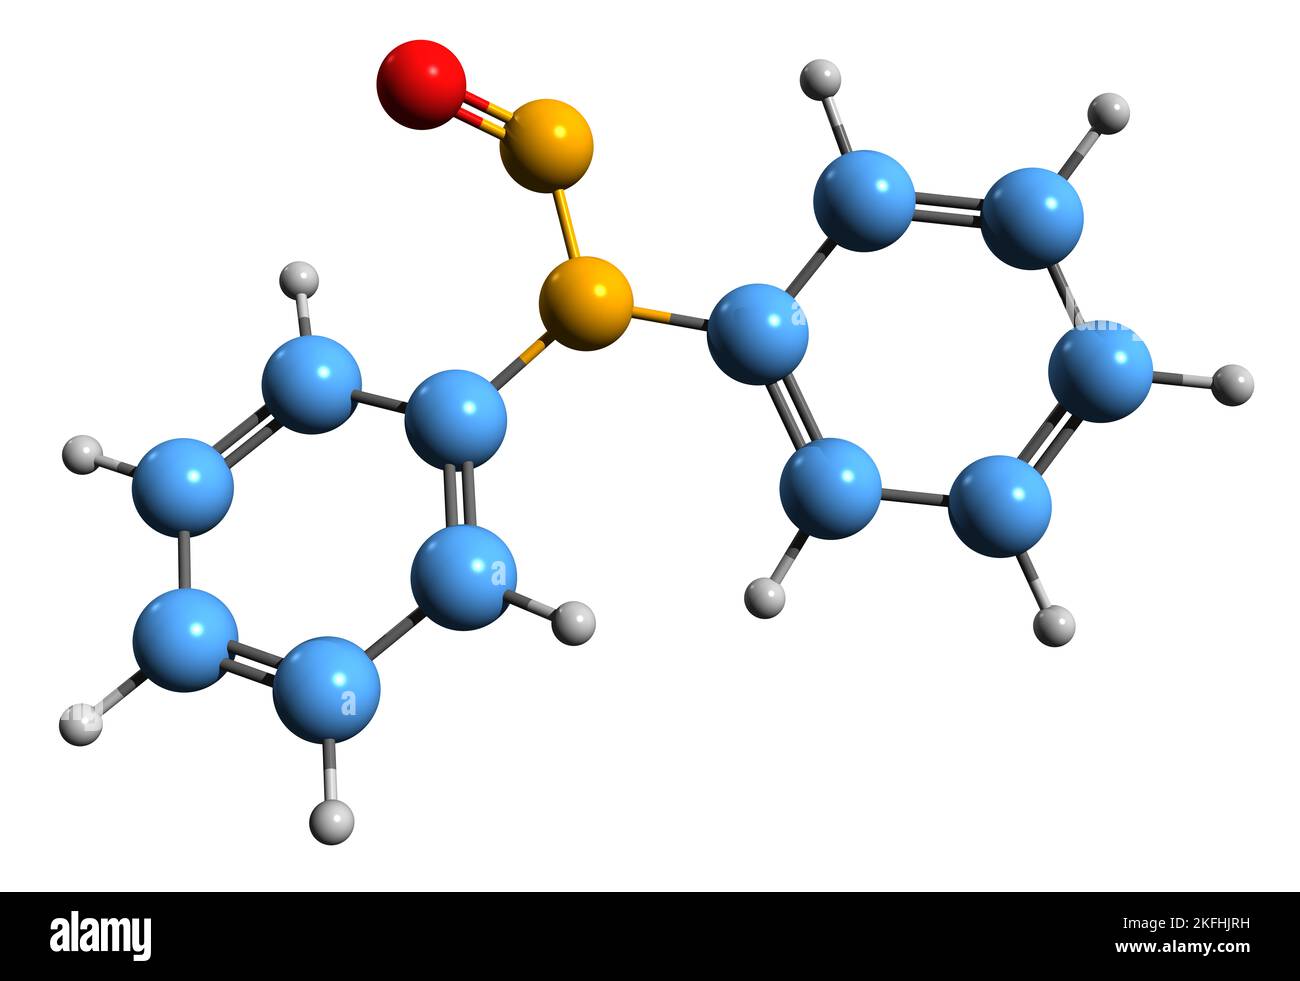 3D immagine della formula scheletrica difenilnitrosamina - struttura chimica molecolare della N-nitrosodifenilammina isolata su sfondo bianco Foto Stock